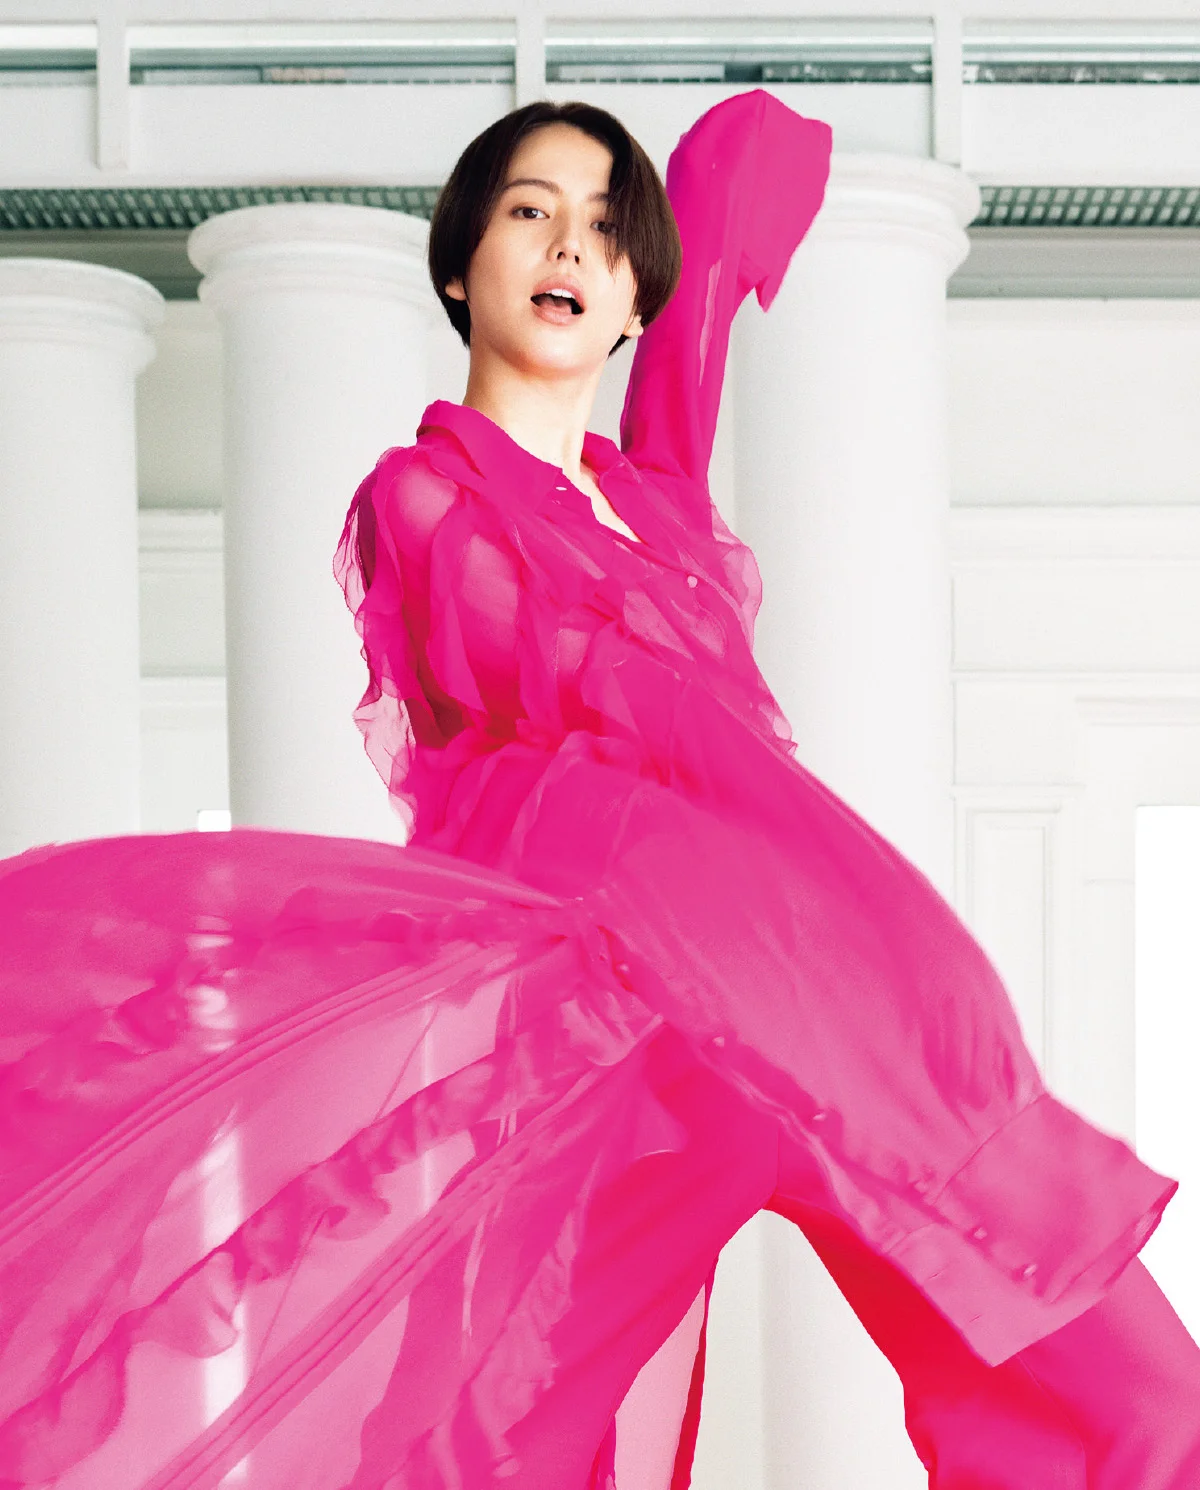 VALENTINOでドレスアップ 長澤まさみ、ピンクに生まれ変わる | SPUR